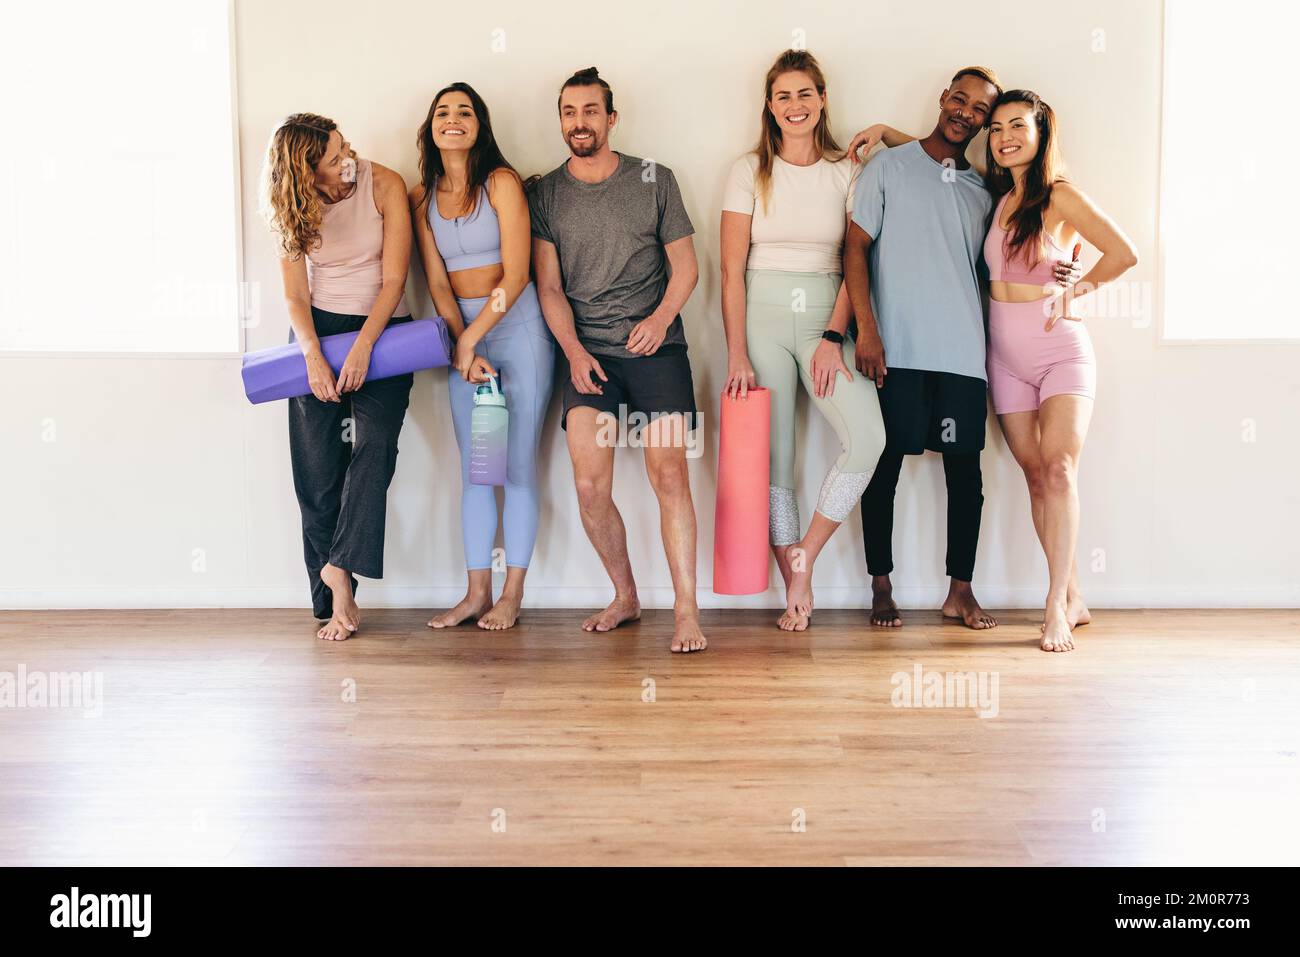 Eine Gruppe von Menschen, die mit ihren Trainingsmatten in einem Yoga-Studio lächeln und stehen. Multikulturelle Leute, die zusammen an einem Yoga-Kurs teilnehmen. Glücklich Stockfoto